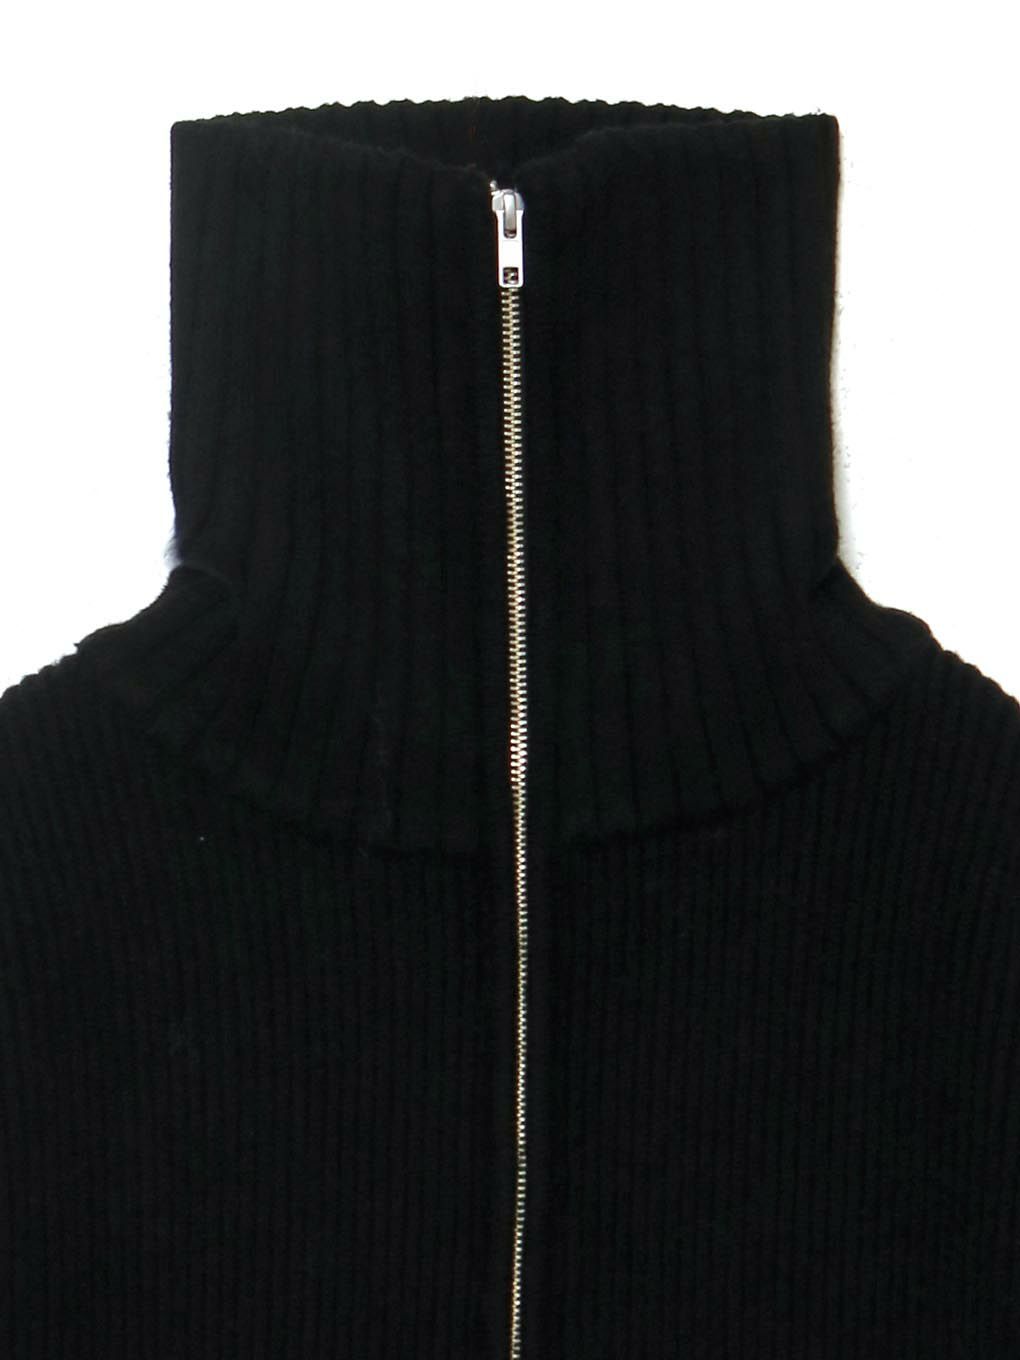 季節のおすすめ商品 melt the lady stitch zip knit jacket ニット